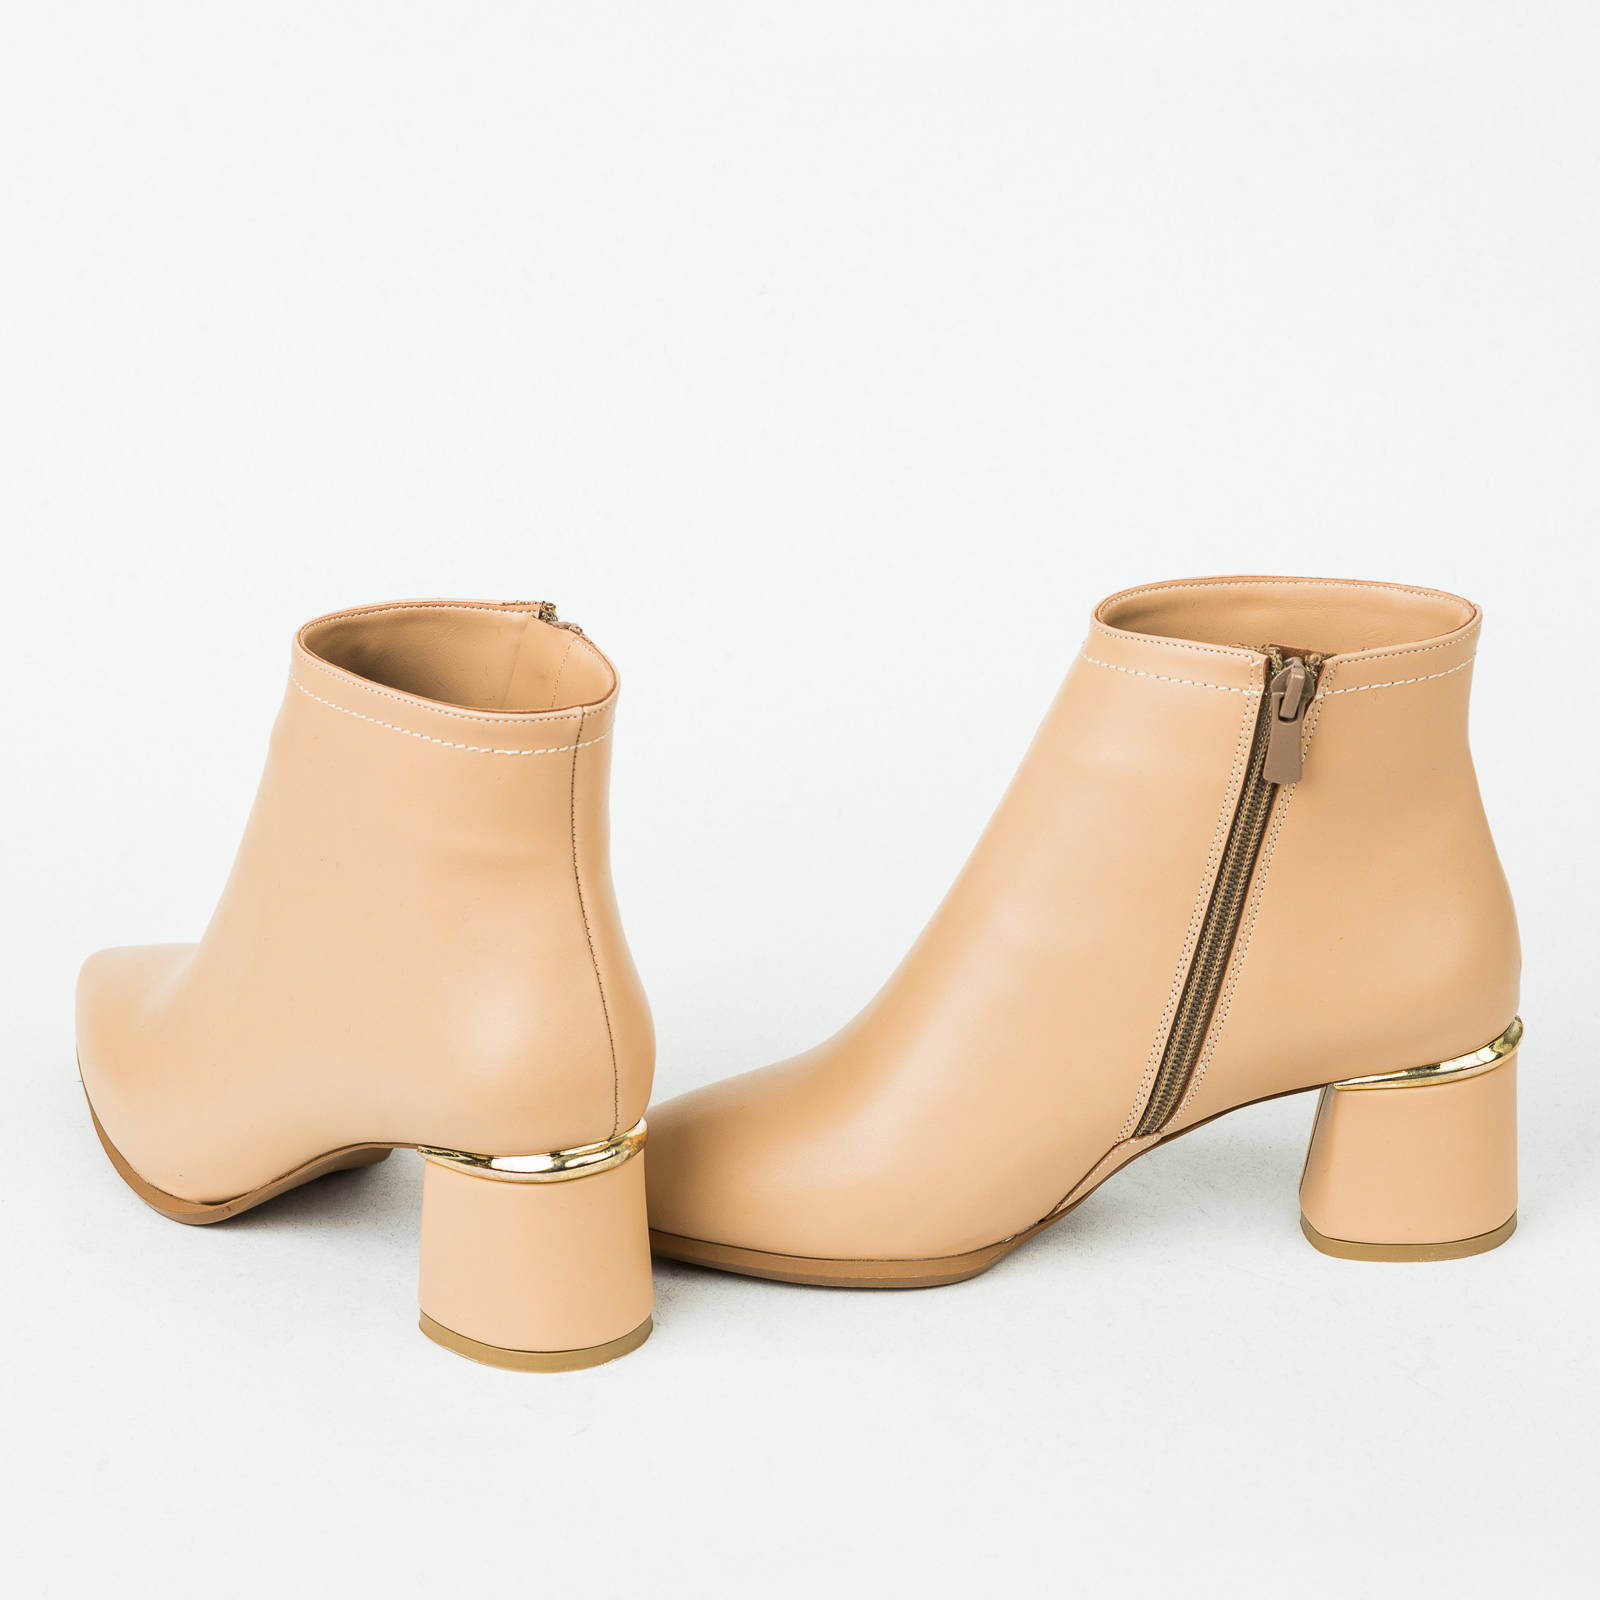 Women ankle boots B228 - BEIGE